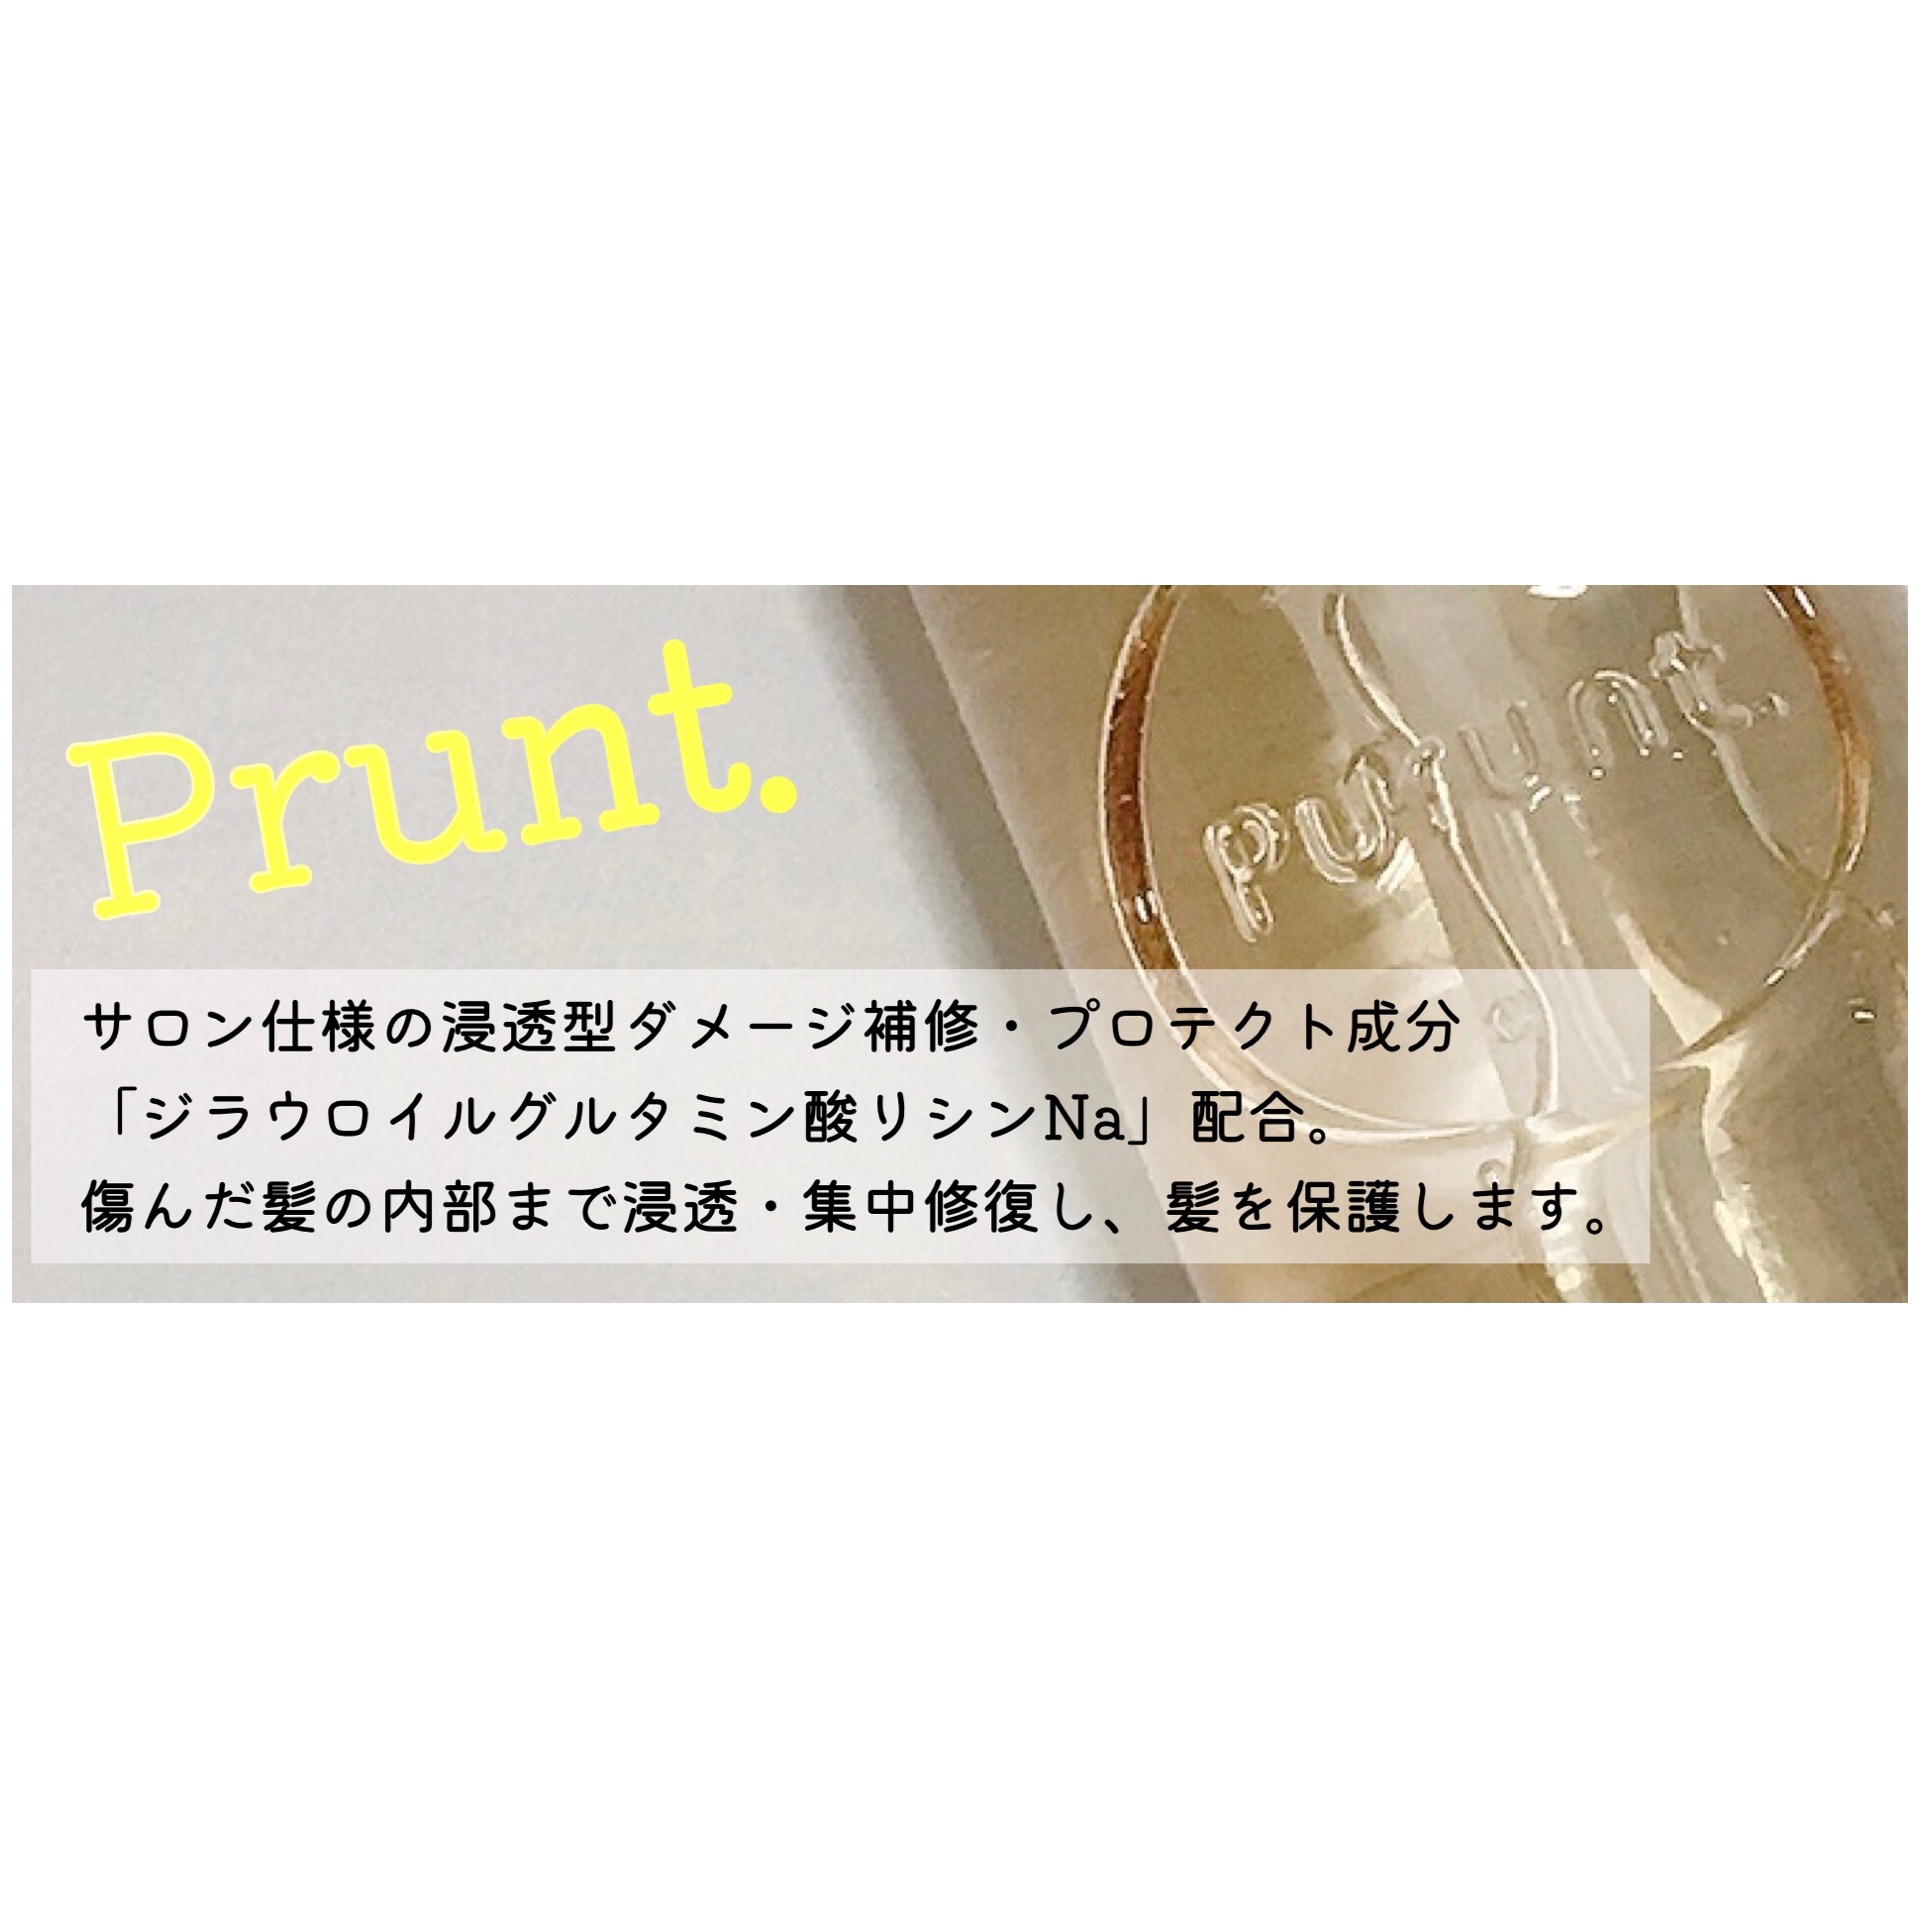 Purunt.(プルント) ディープモイスト美容液ヘアオイルの良い点・メリットに関するMarukoさんの口コミ画像3